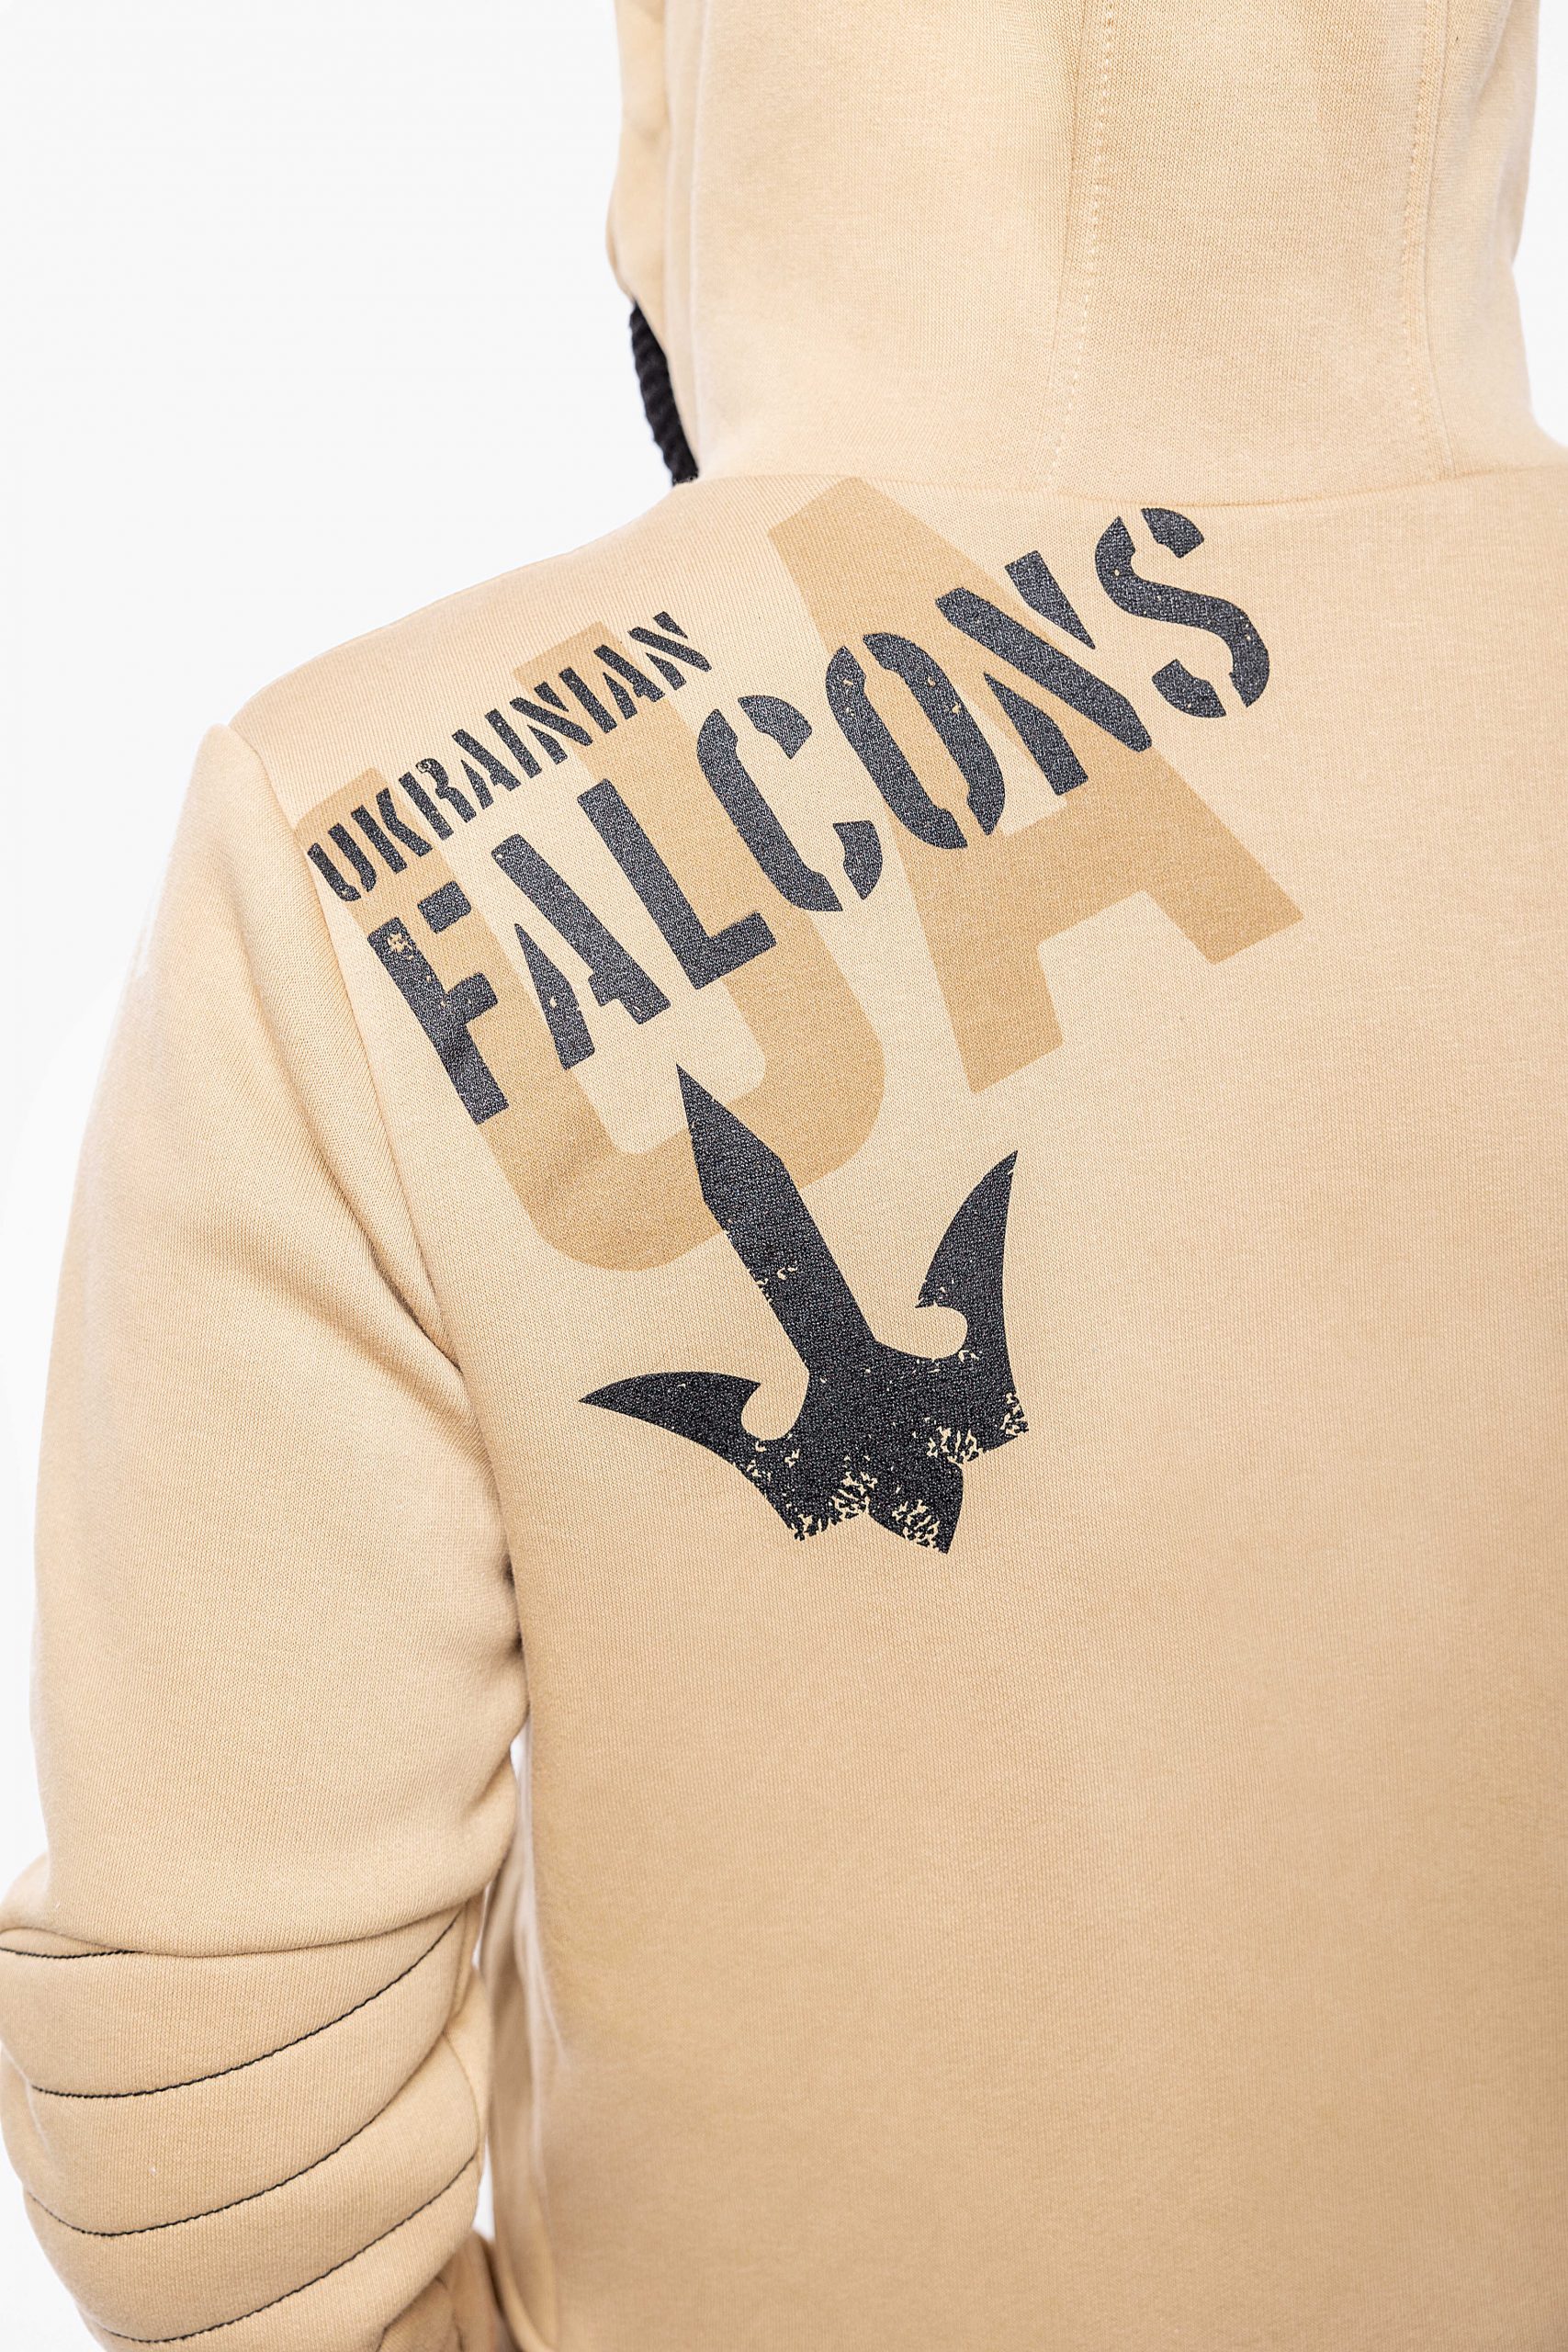 Women's Hoodie Ukrainian Falcons. Color sand. 4.